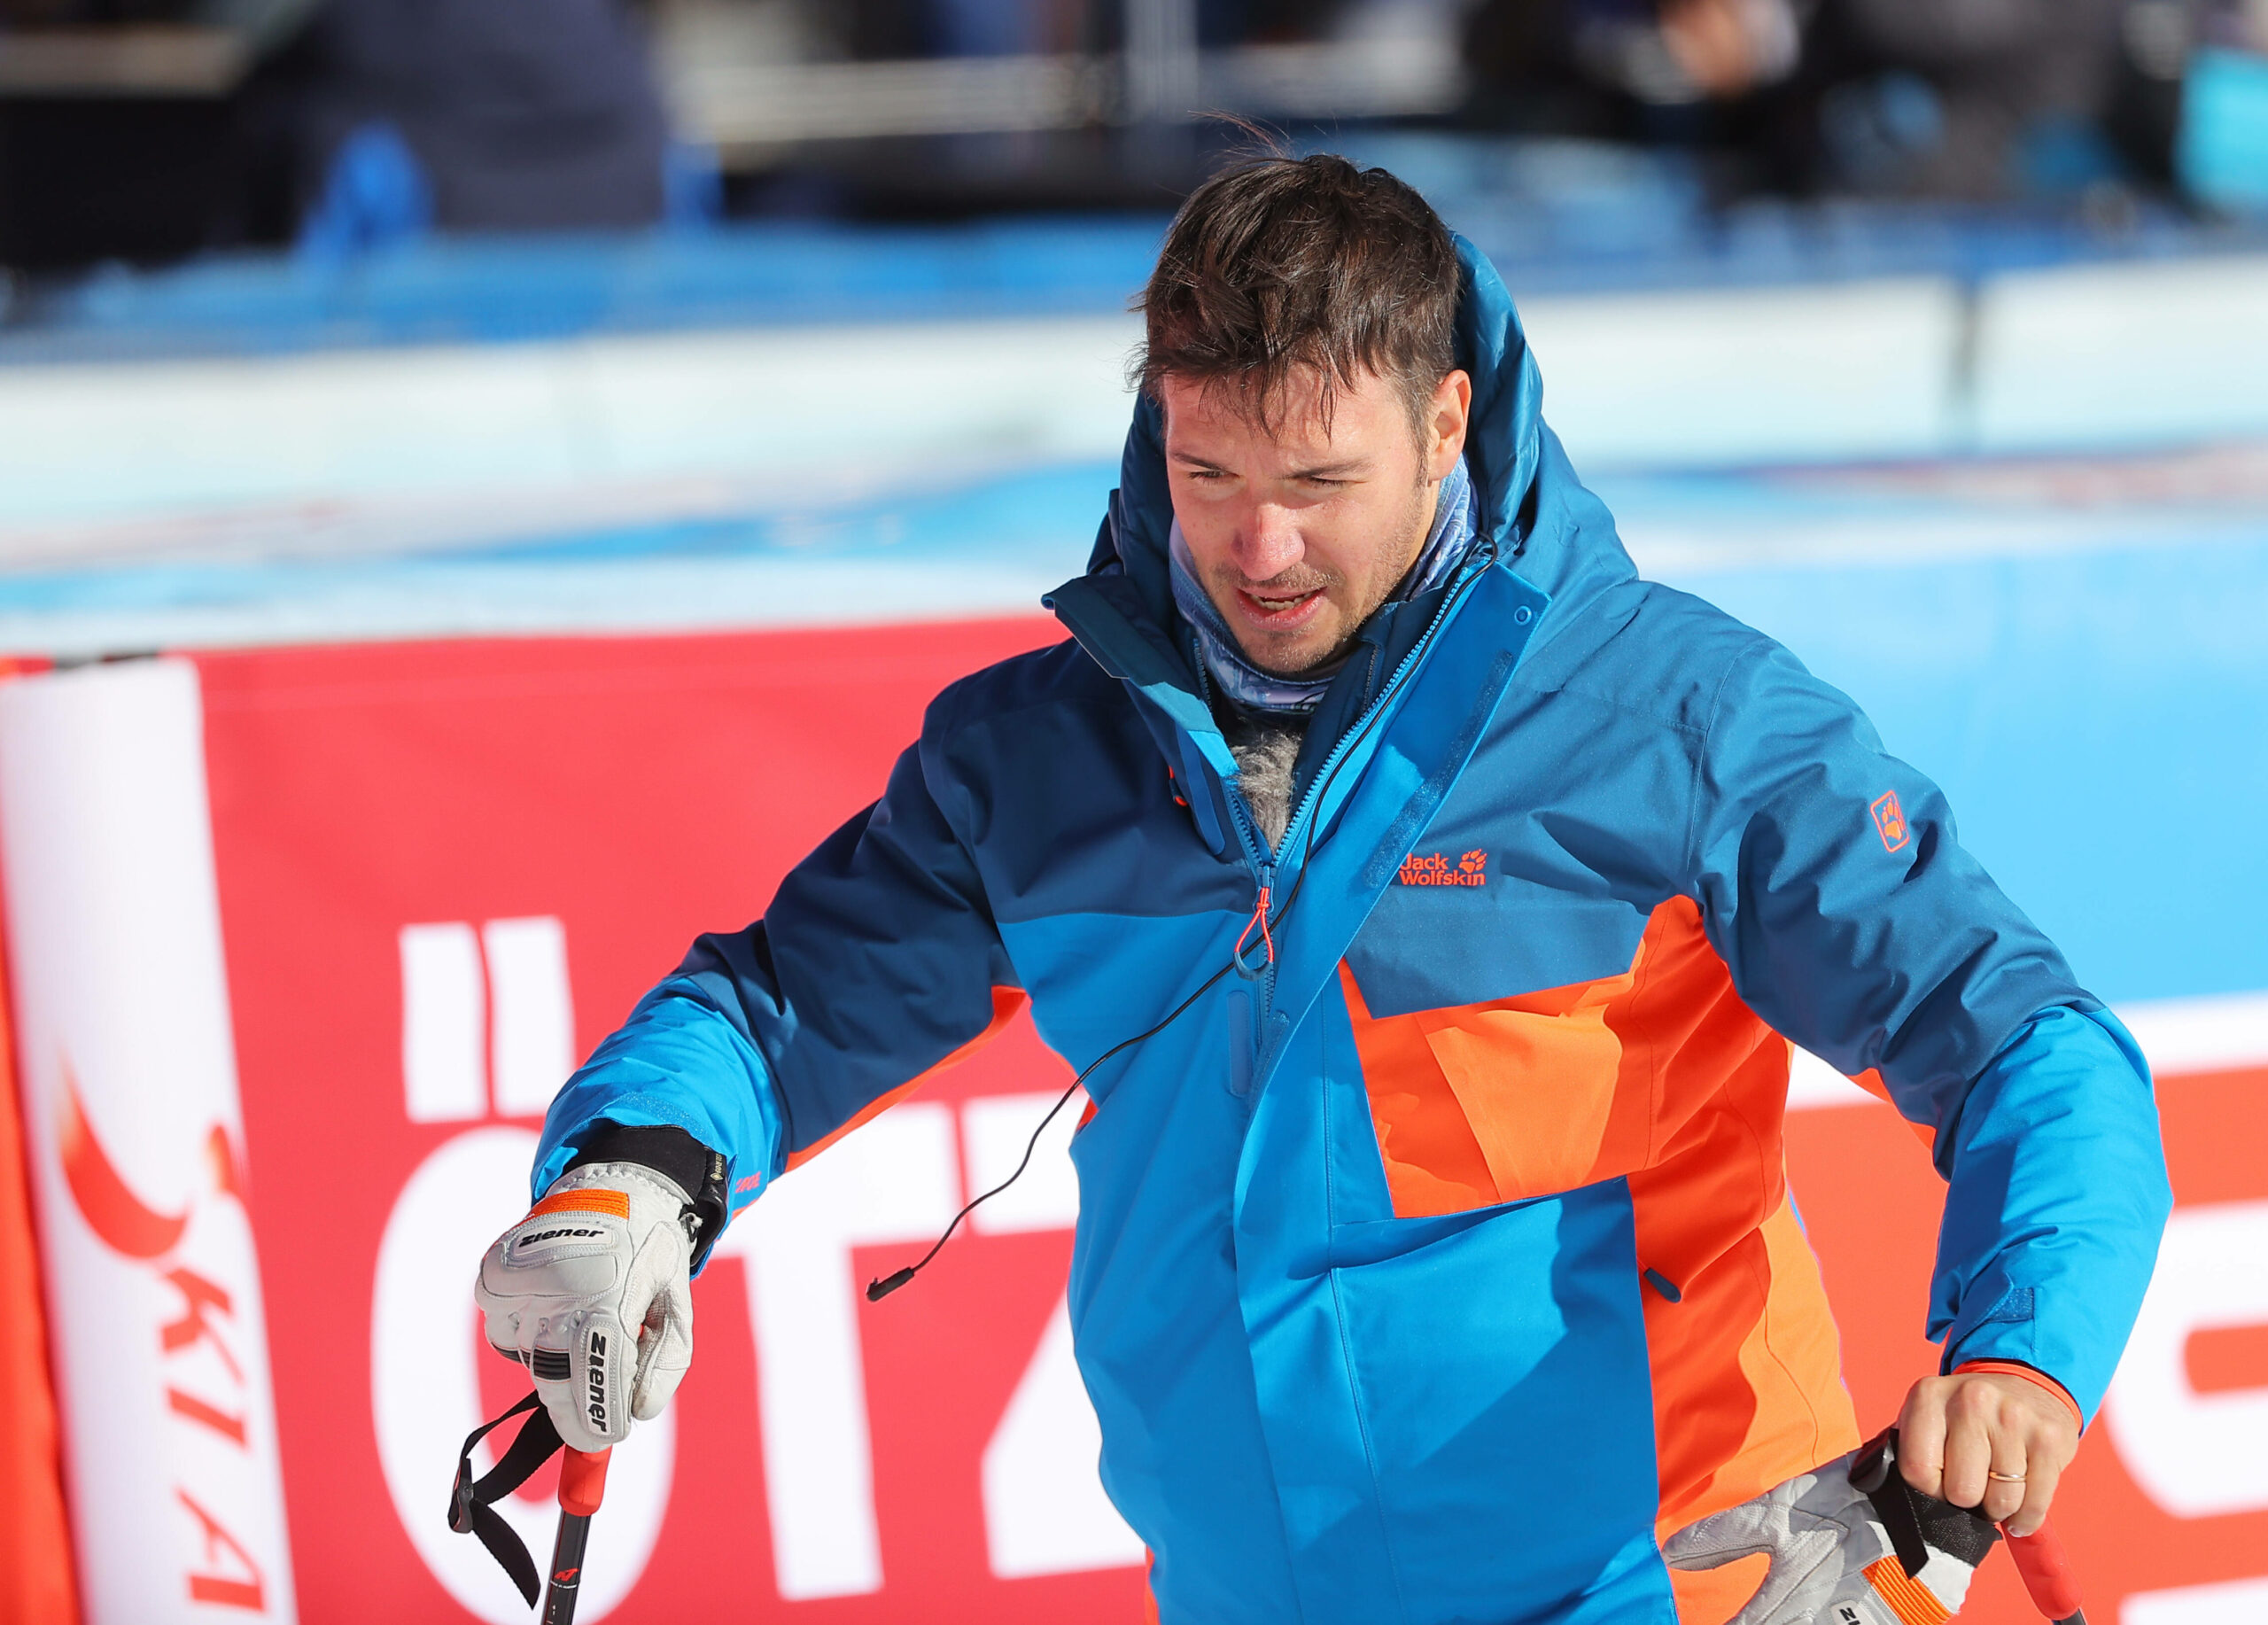 Felix Neureuther in Winterjacke und mit Ski-Stöcken in den Händen.